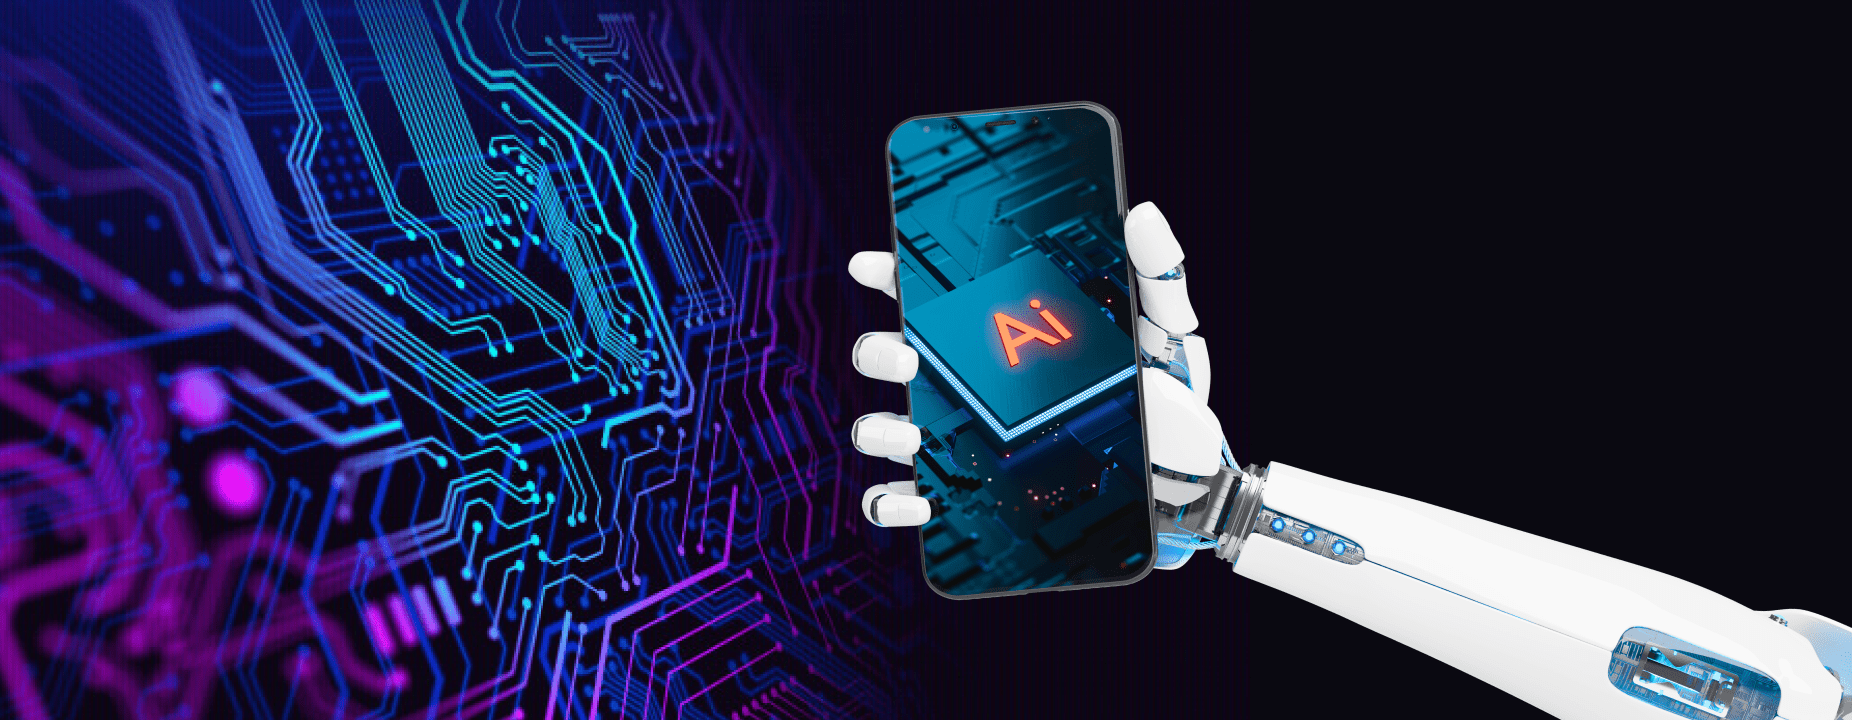 AI in Mobile